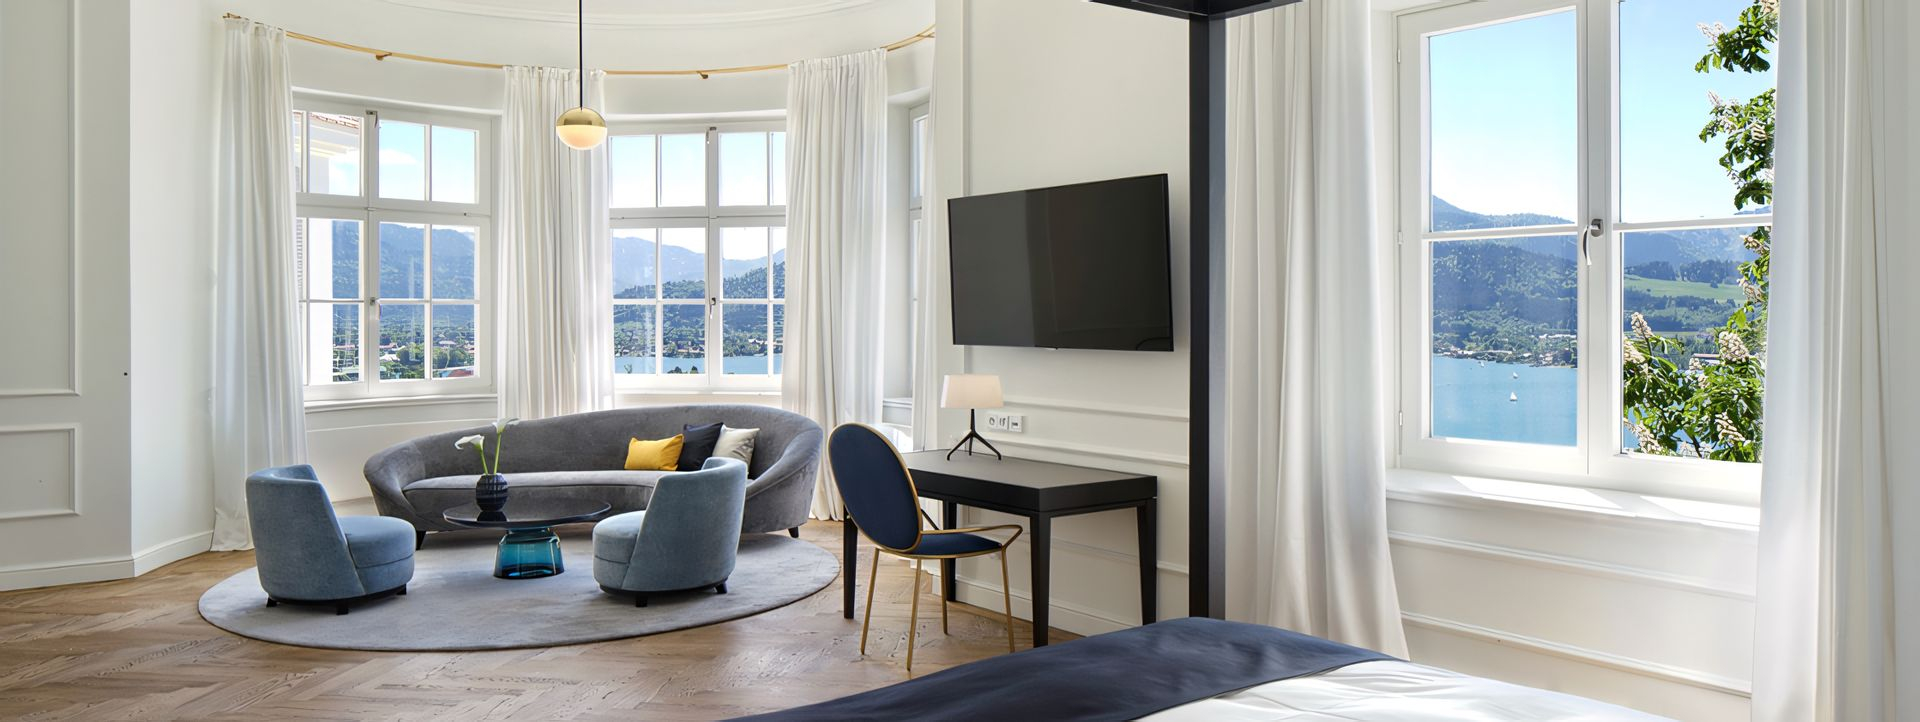 Klassisch | ModernDas Tegernsee 
Fertigstellung Suiten im Sengerschloß 
Projektvorstellung Das Hotel Tegernsee

